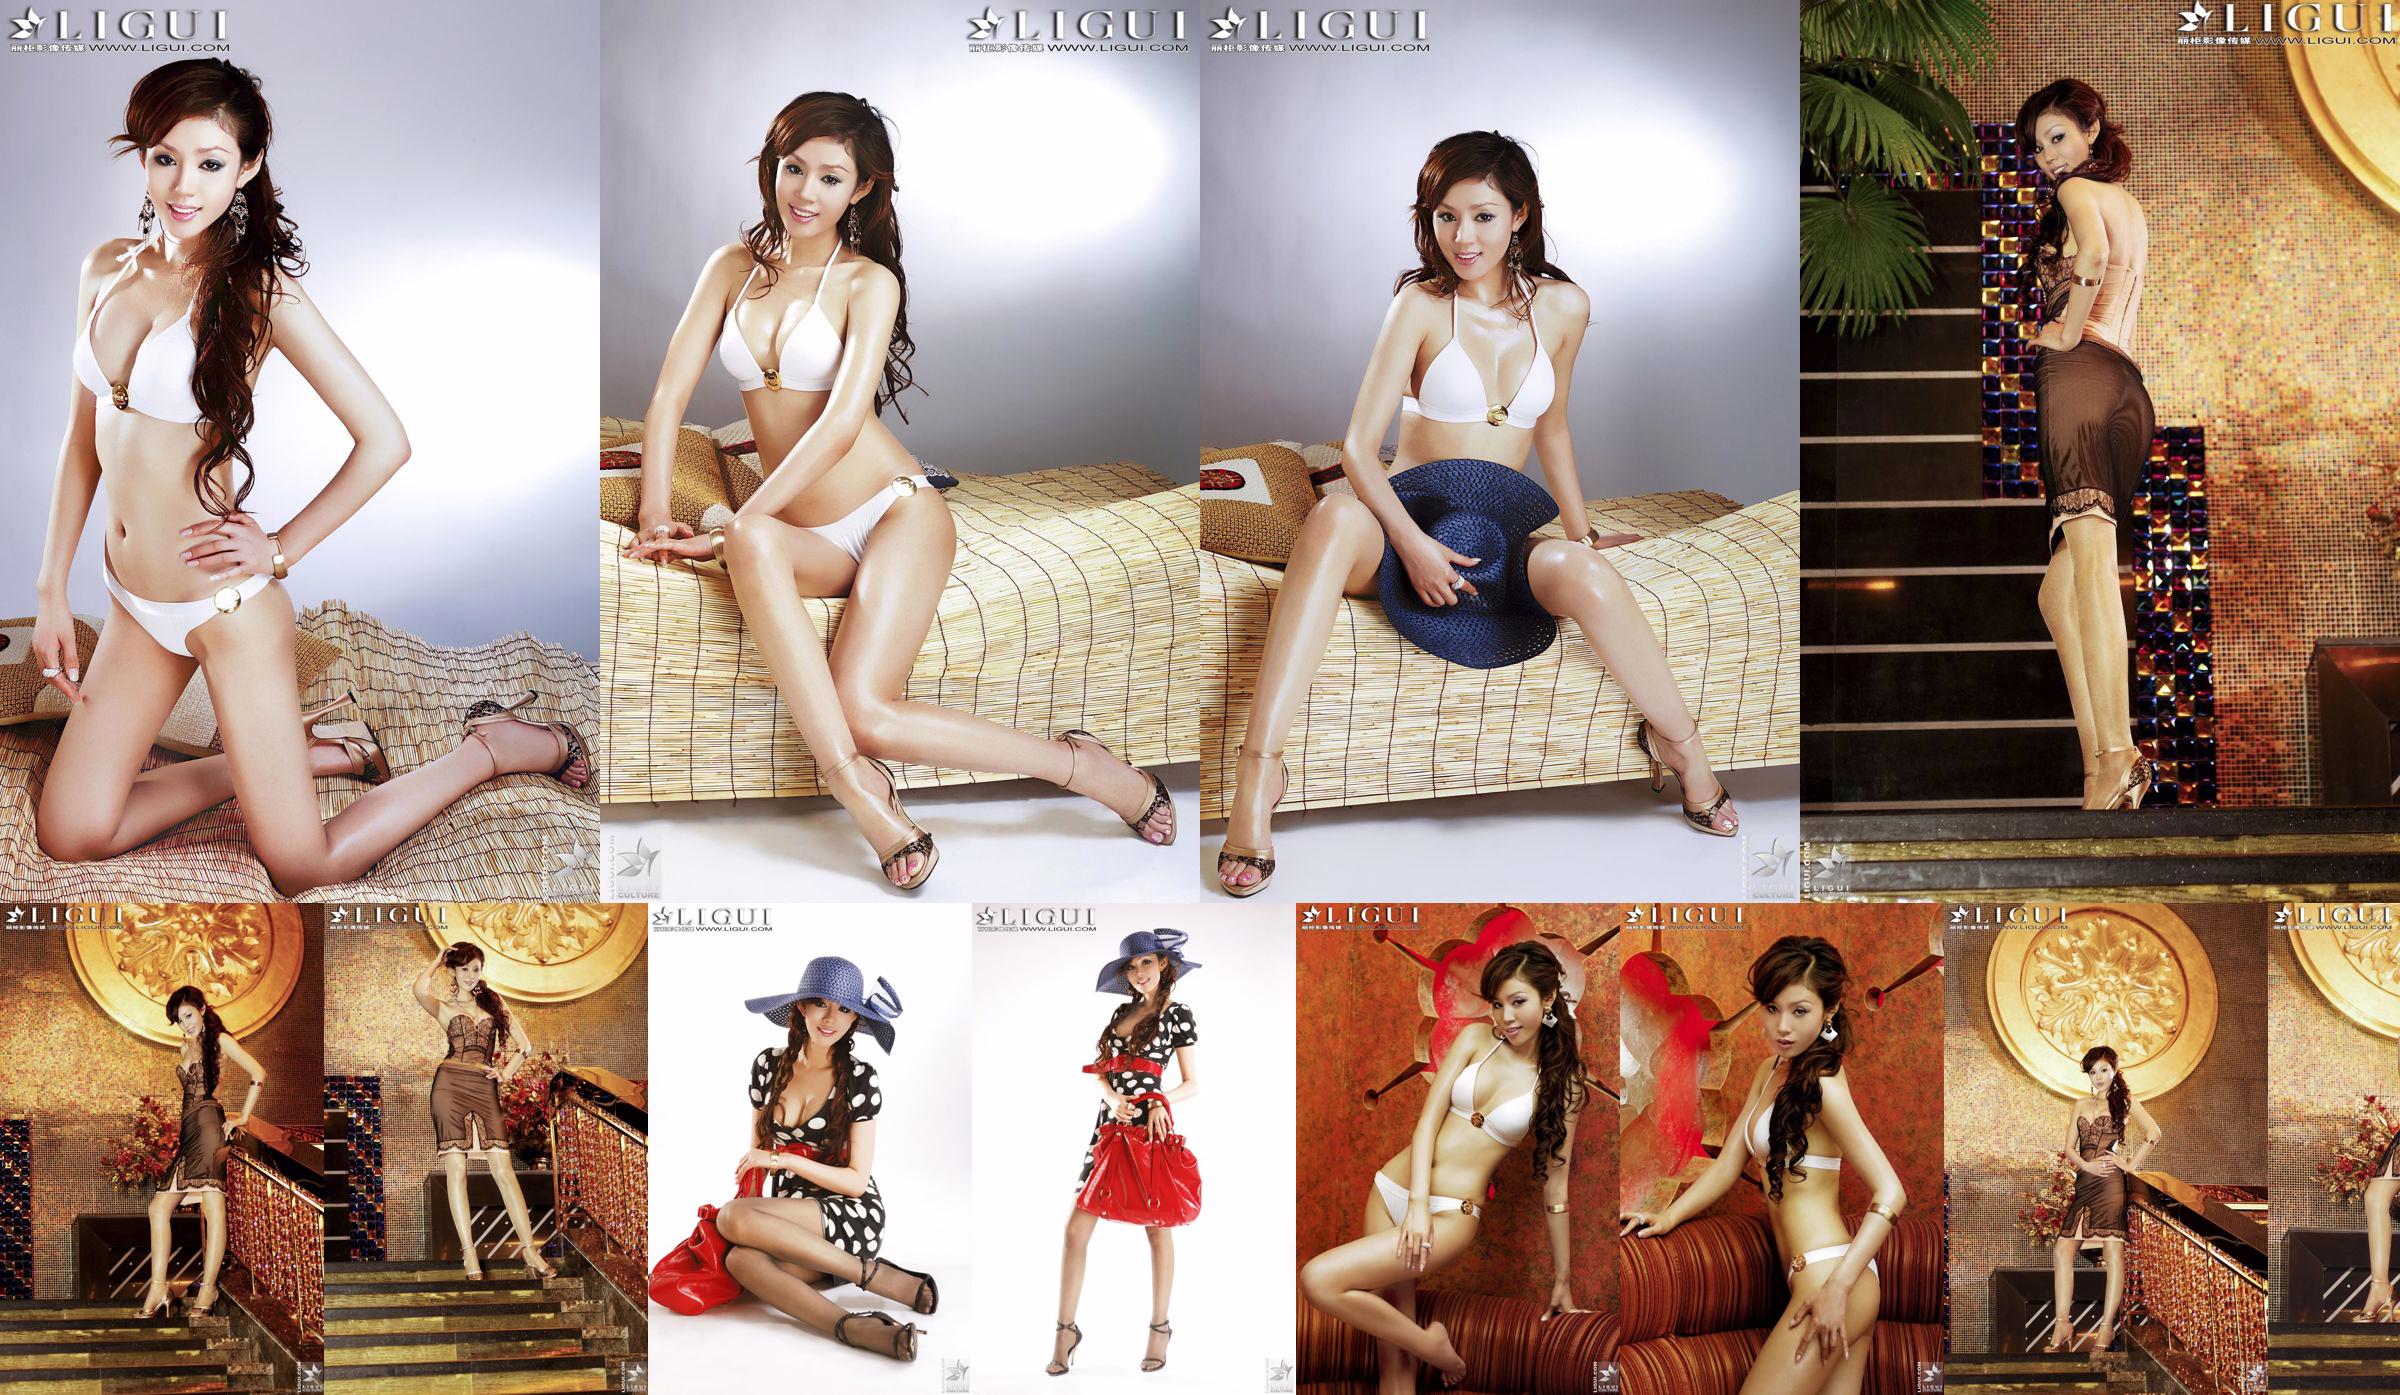 [丽 柜 LiGui] Hình ảnh đôi chân xinh đẹp và đôi chân mượt mà "Bikini + Dress" của Người mẫu Yao Jinjin No.d61d01 Trang 7